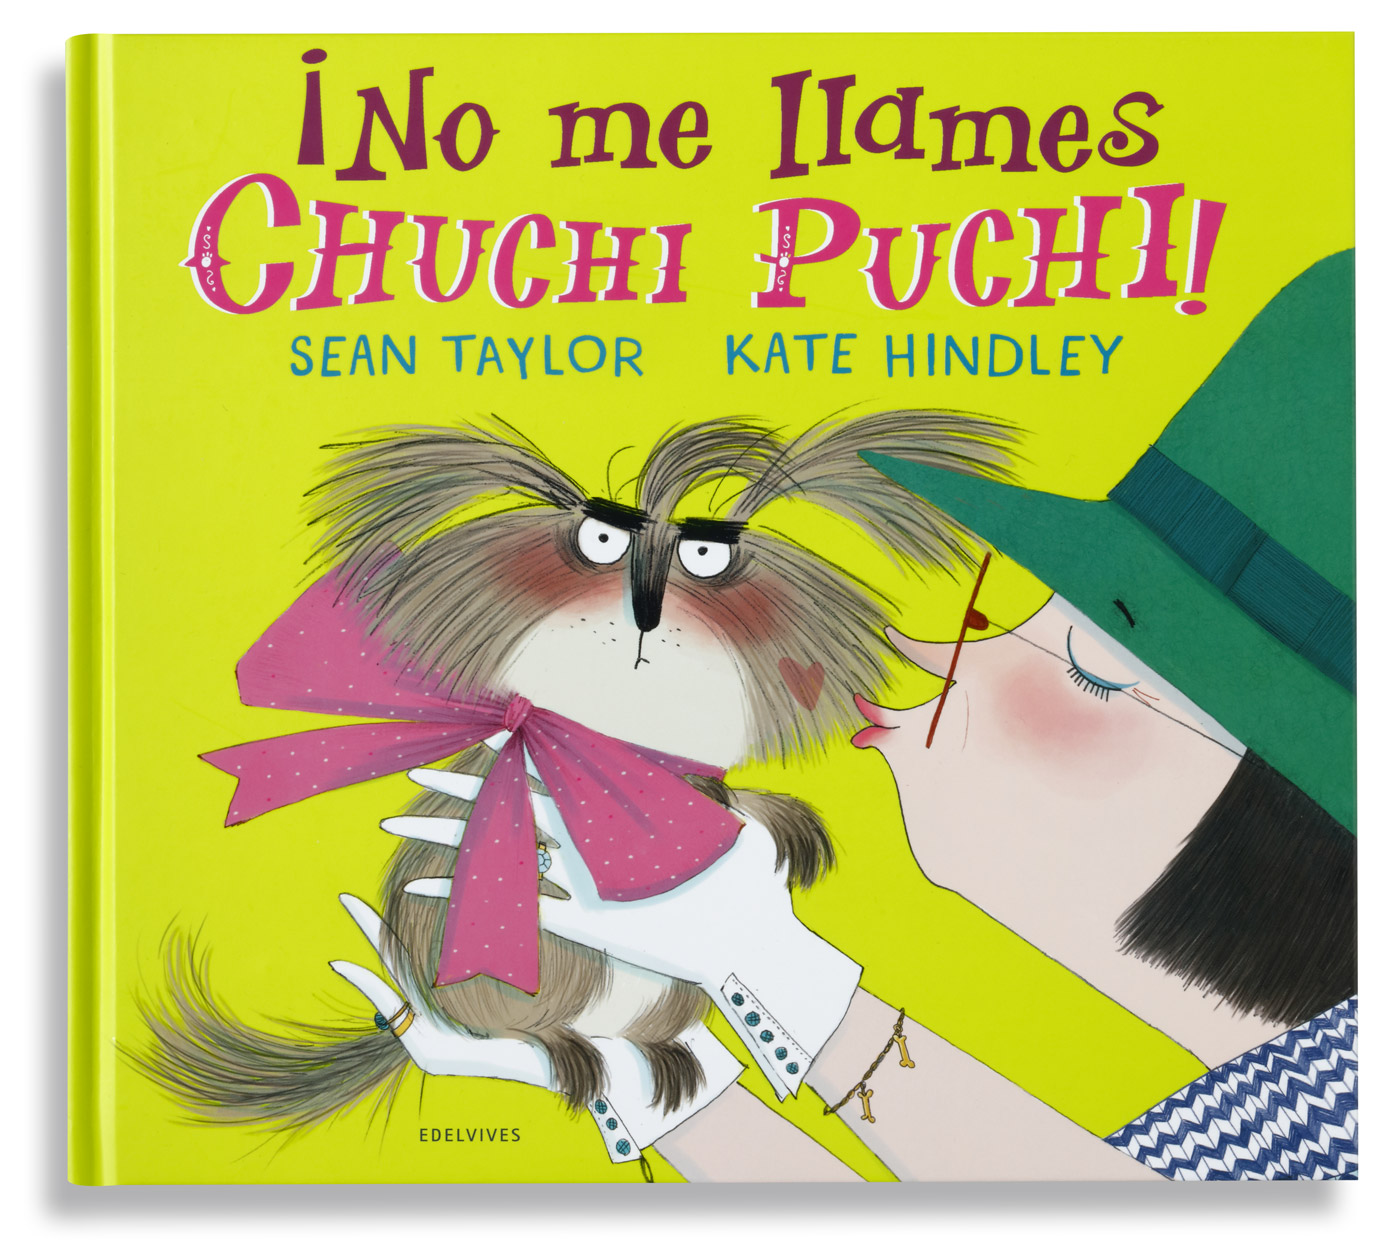 No me llames Chuchi Puchi